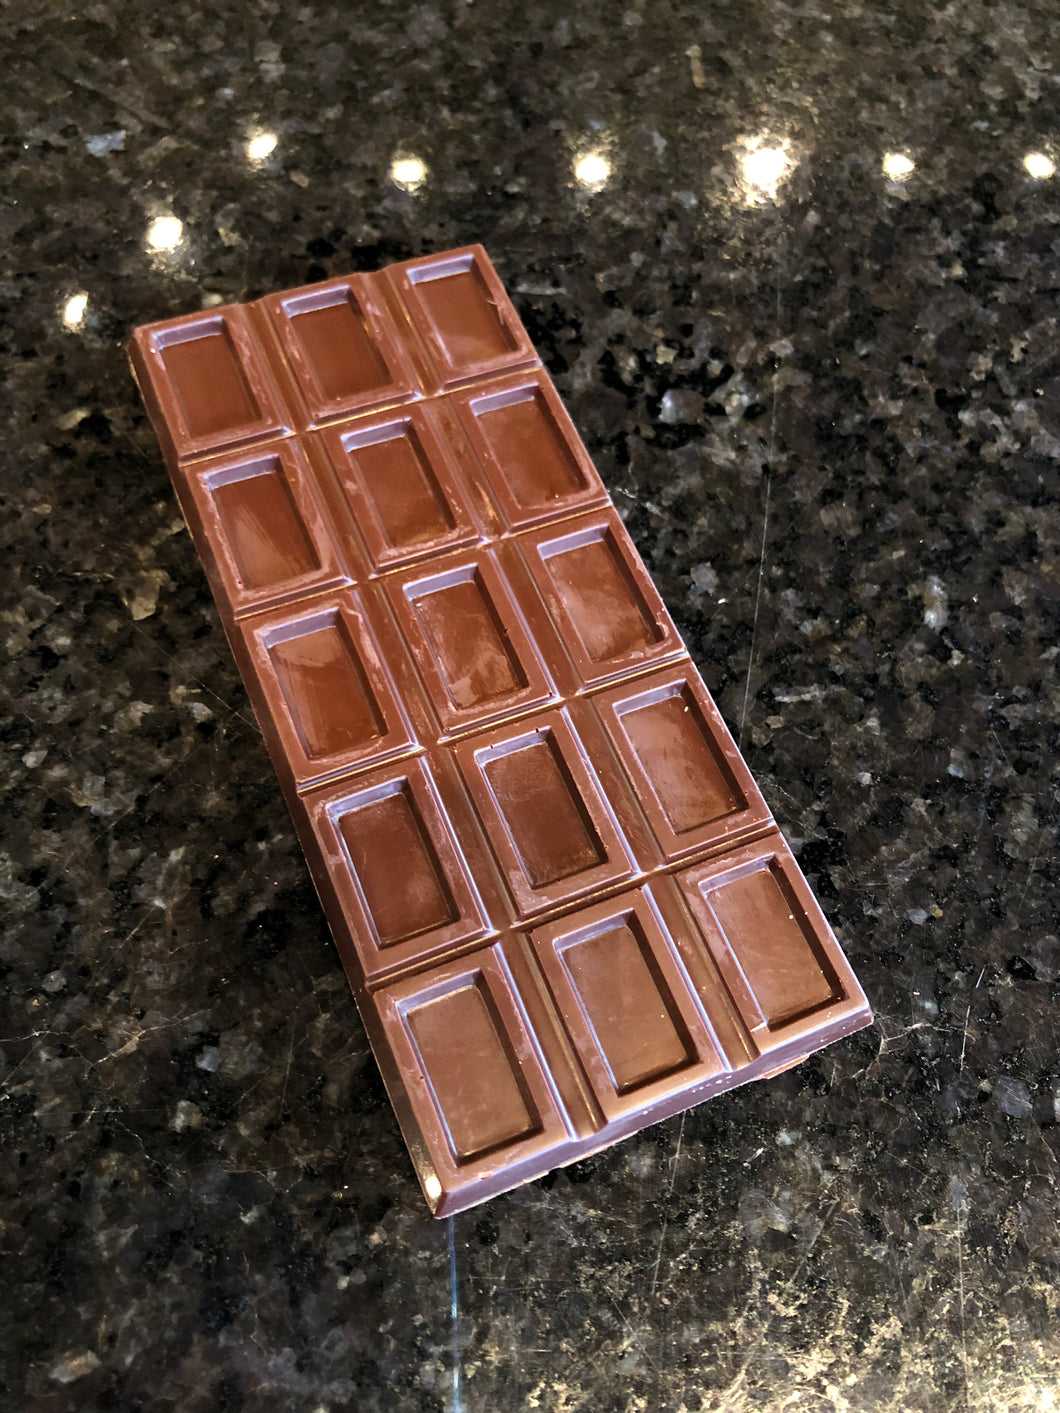 54% Dark Chocolate Bars